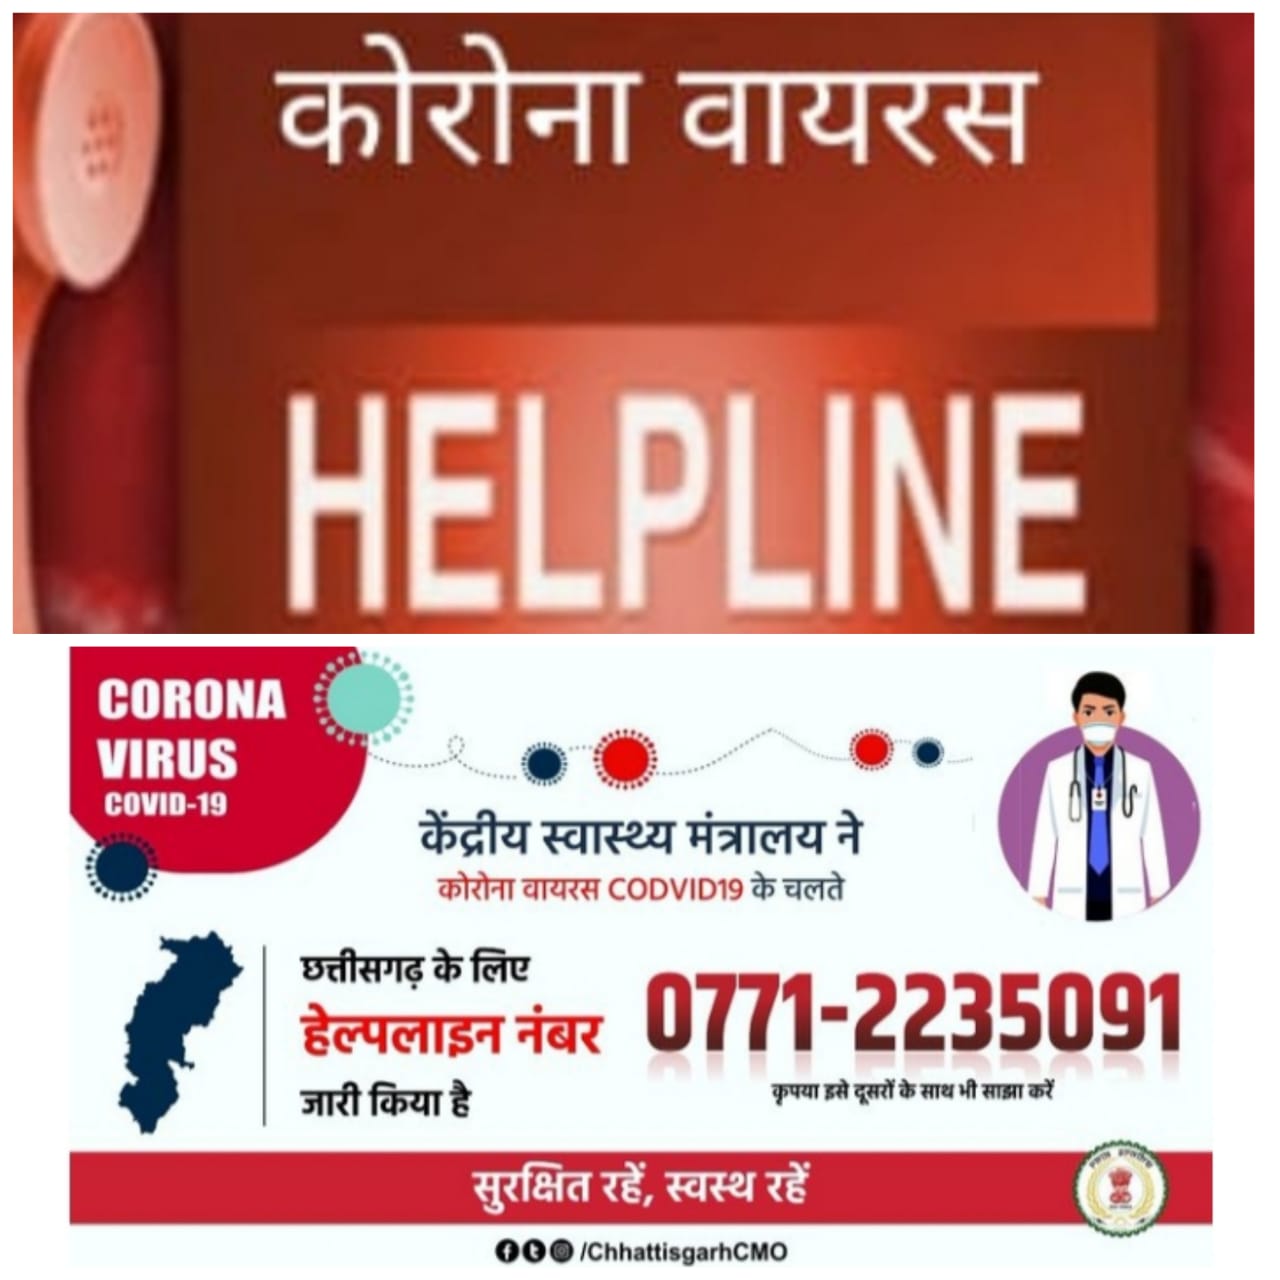 कोरोना वायरस — केंद्रीय स्वास्थ्य मंत्रालय ने सभी राज्यों के लिये जारी किया हेल्पलाइन नम्बर,अरविन्द तिवारी की रिपोर्ट-नई दिल्ली-